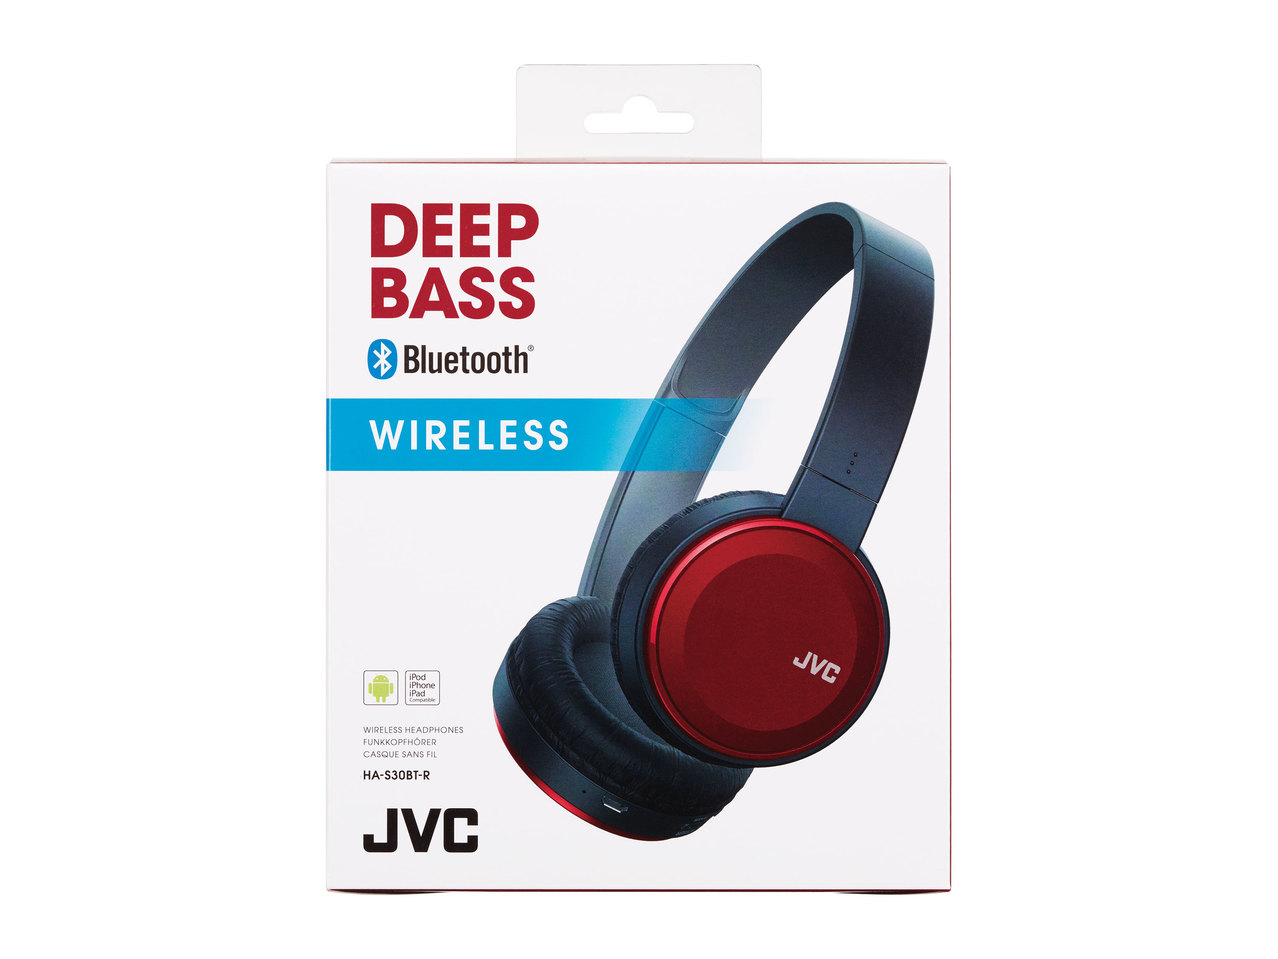 JVC Deep Bass Bluetooth(R) Wireless Headphones1